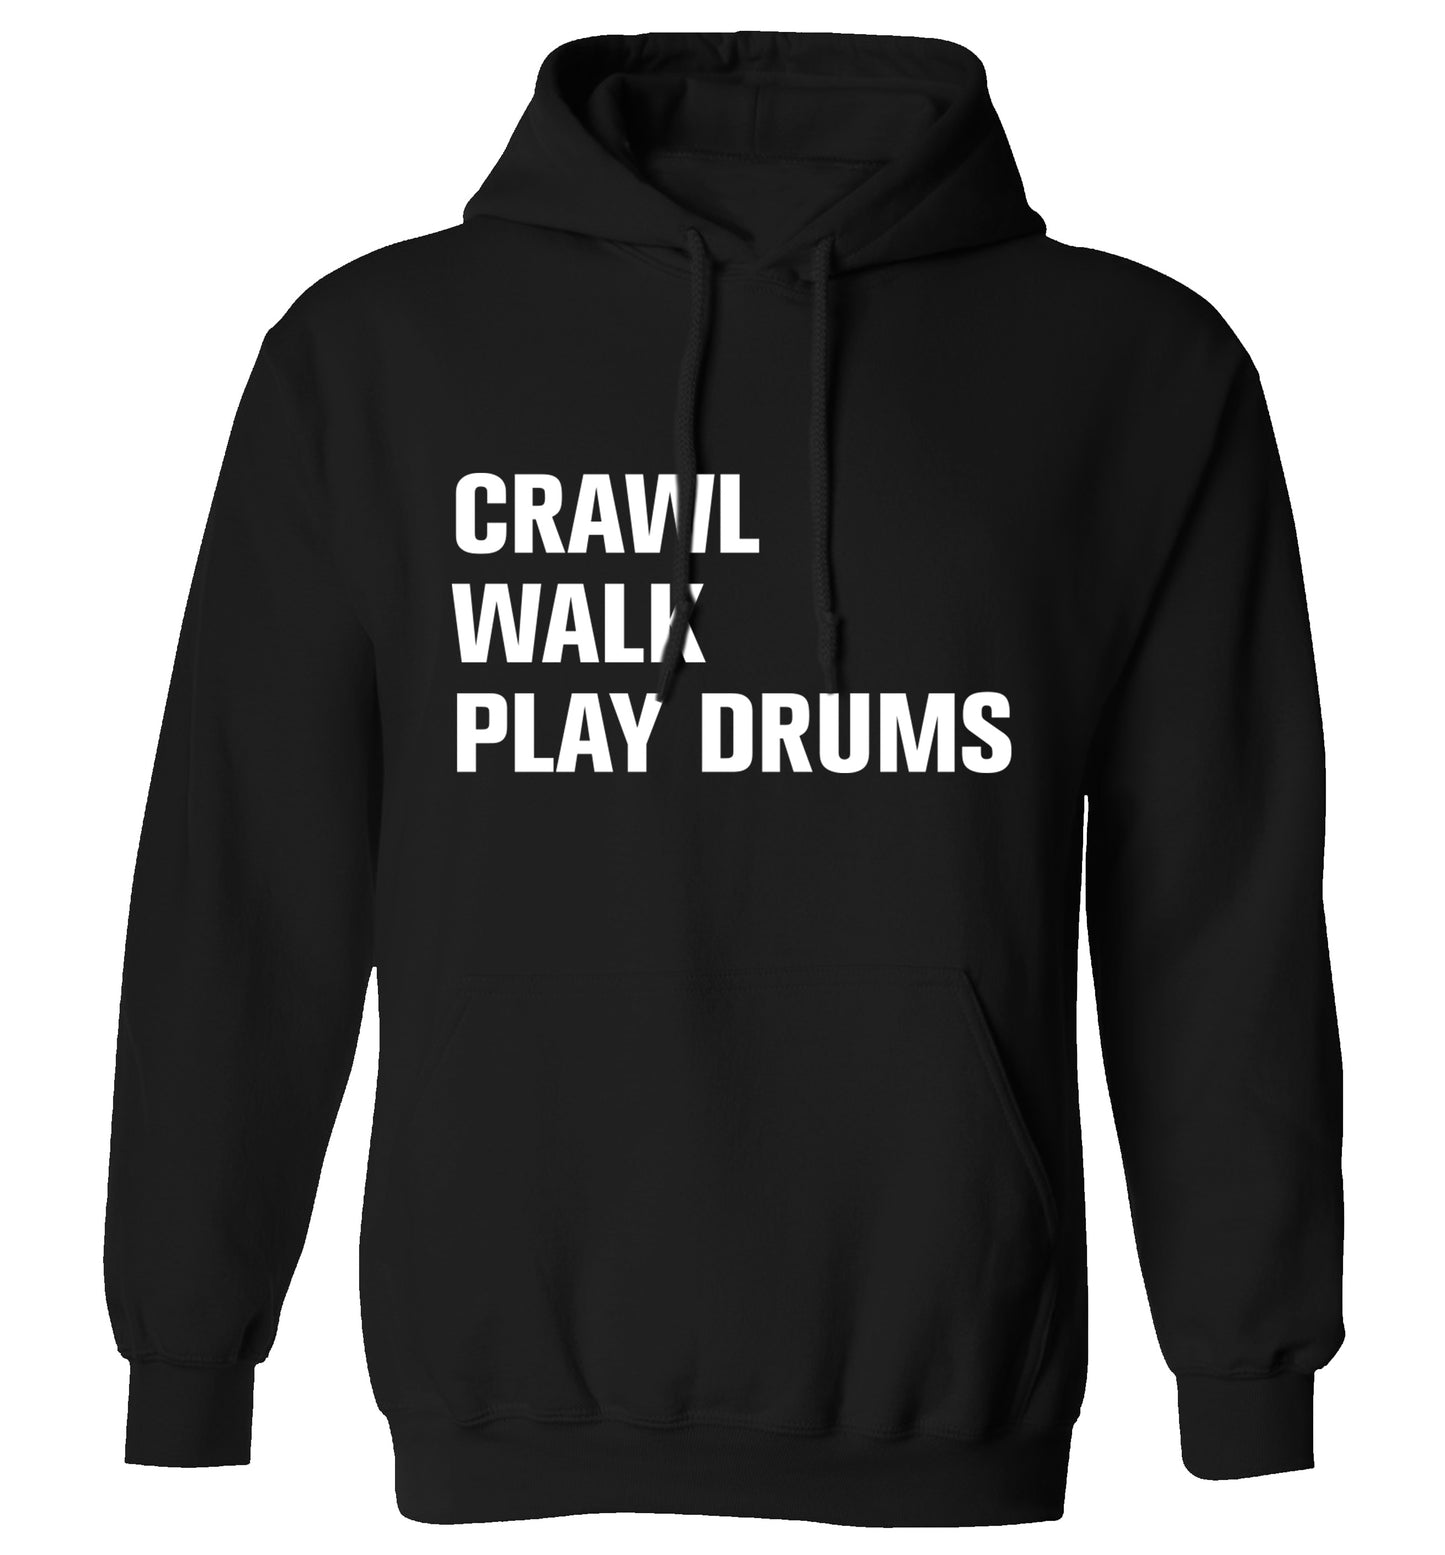 Crawl walk play drums adults unisex black hoodie 2XL